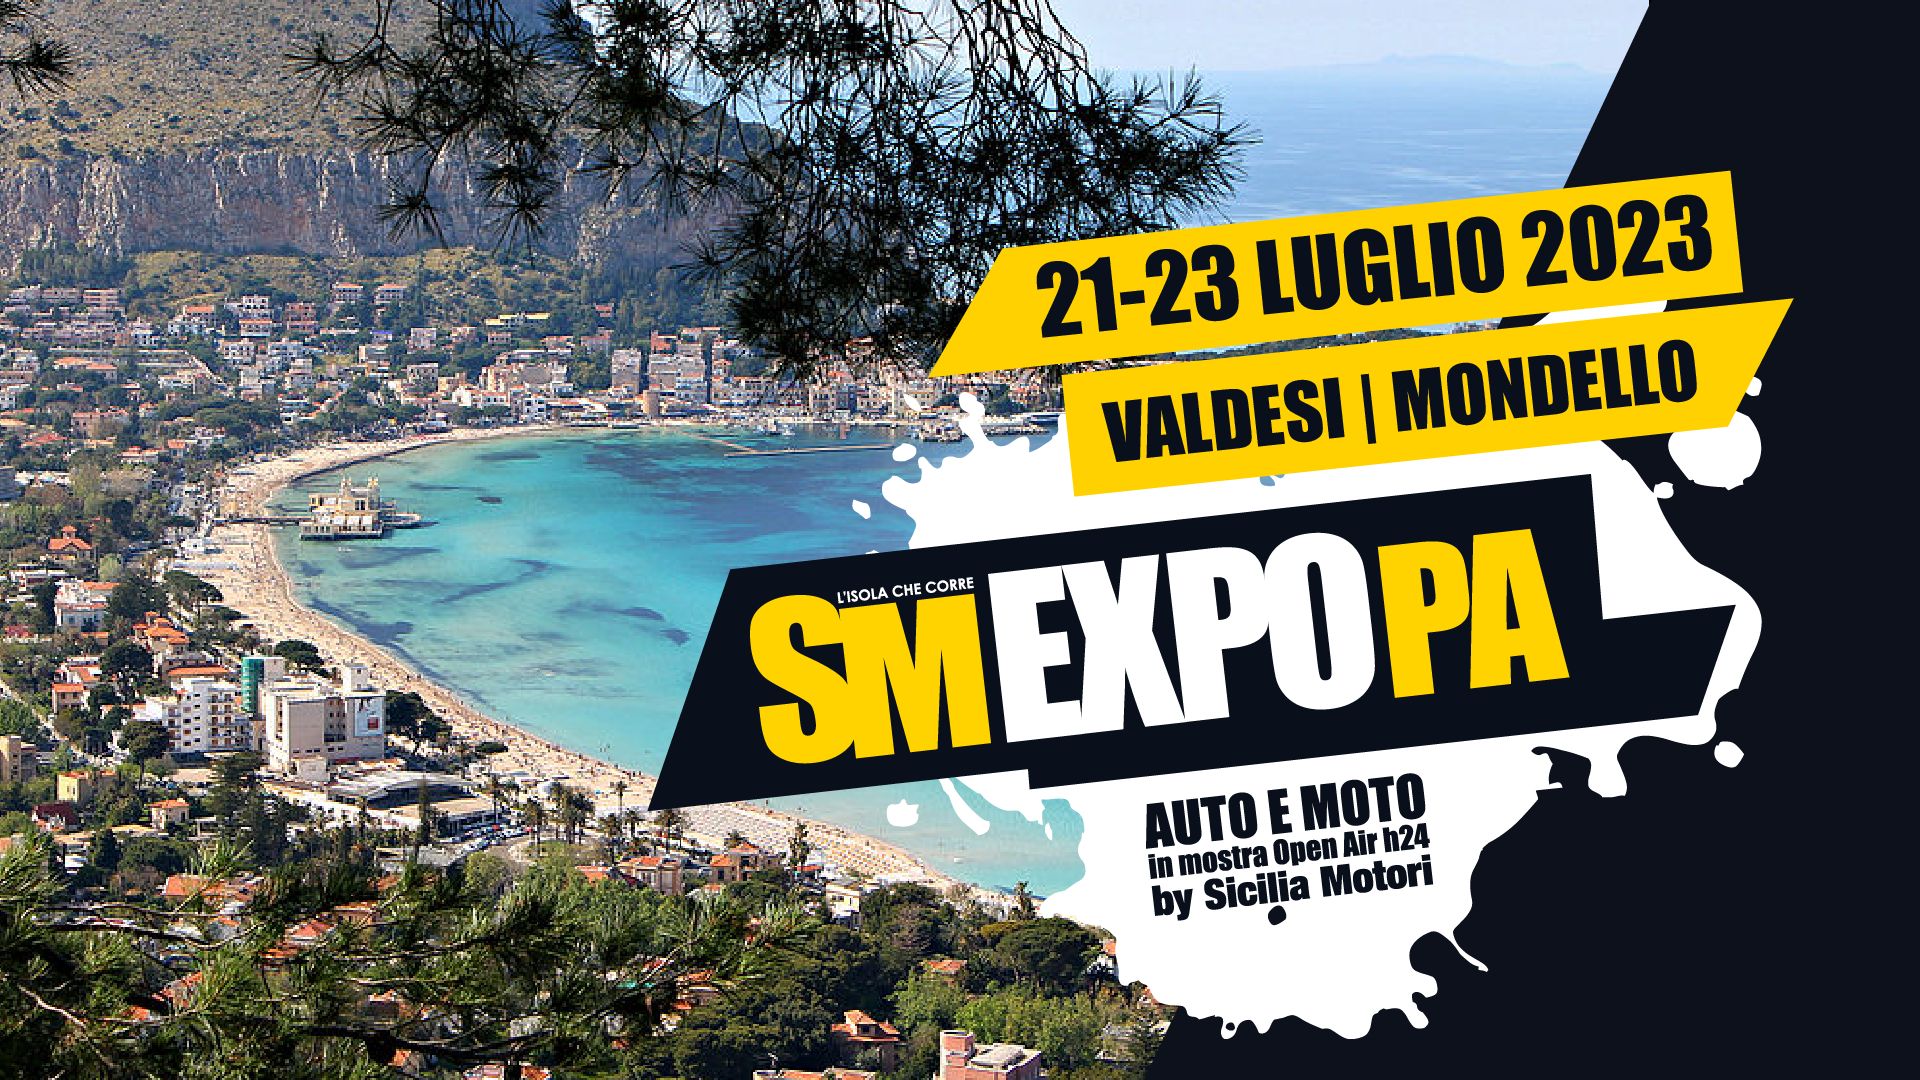 Il 21 luglio torna Sm Expo a Palermo, il “Village” di Sicilia Motori